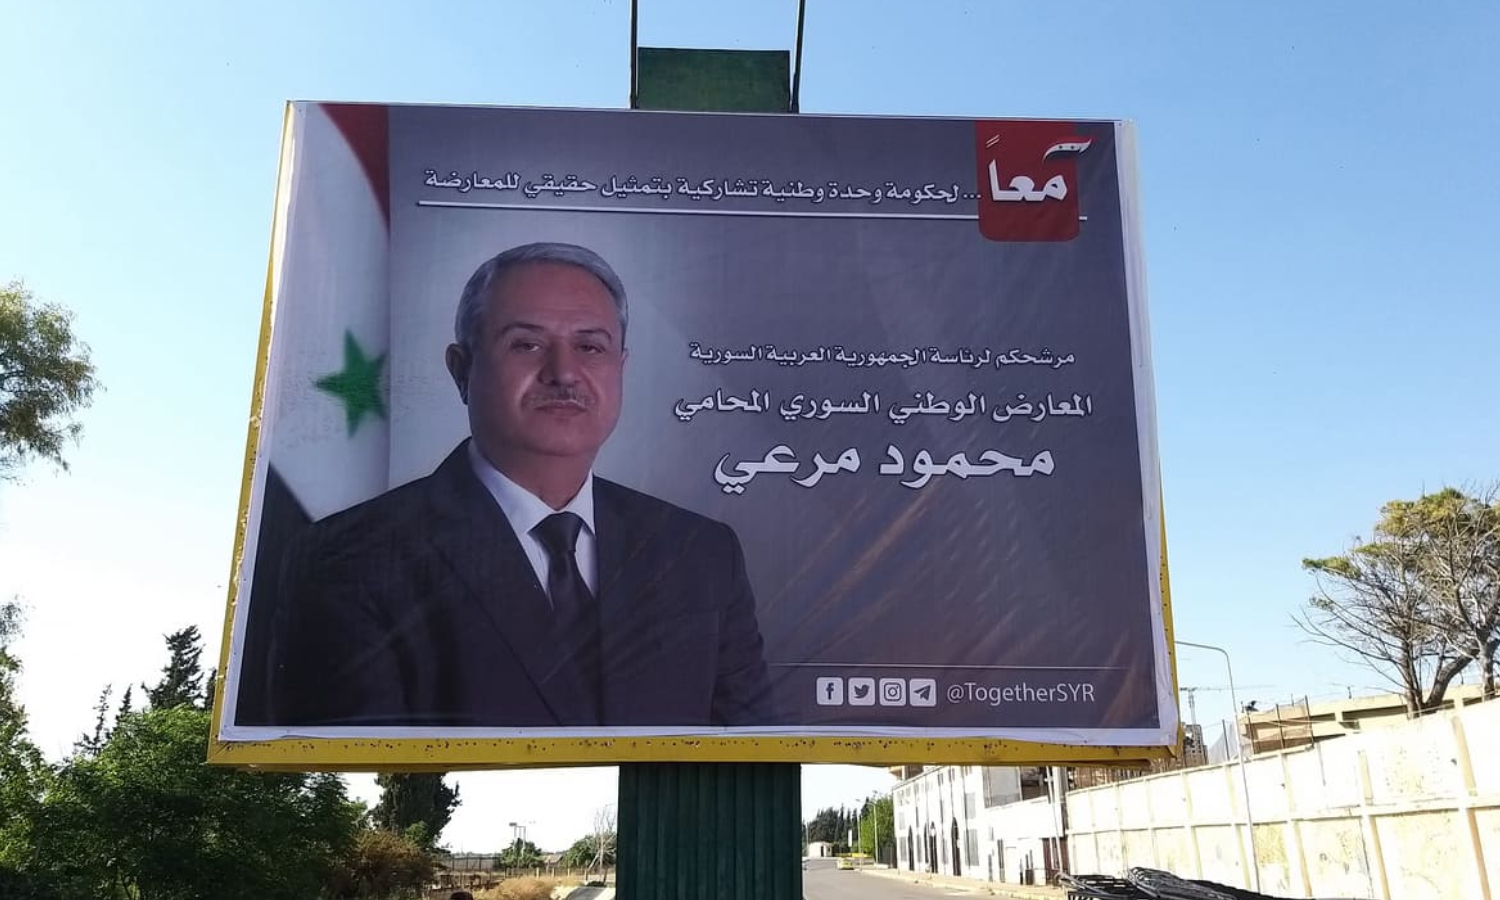 الحملة الانتخابية للمرشح محمود مرعي (صفحة "سناك سوري" في "فيس بوك")